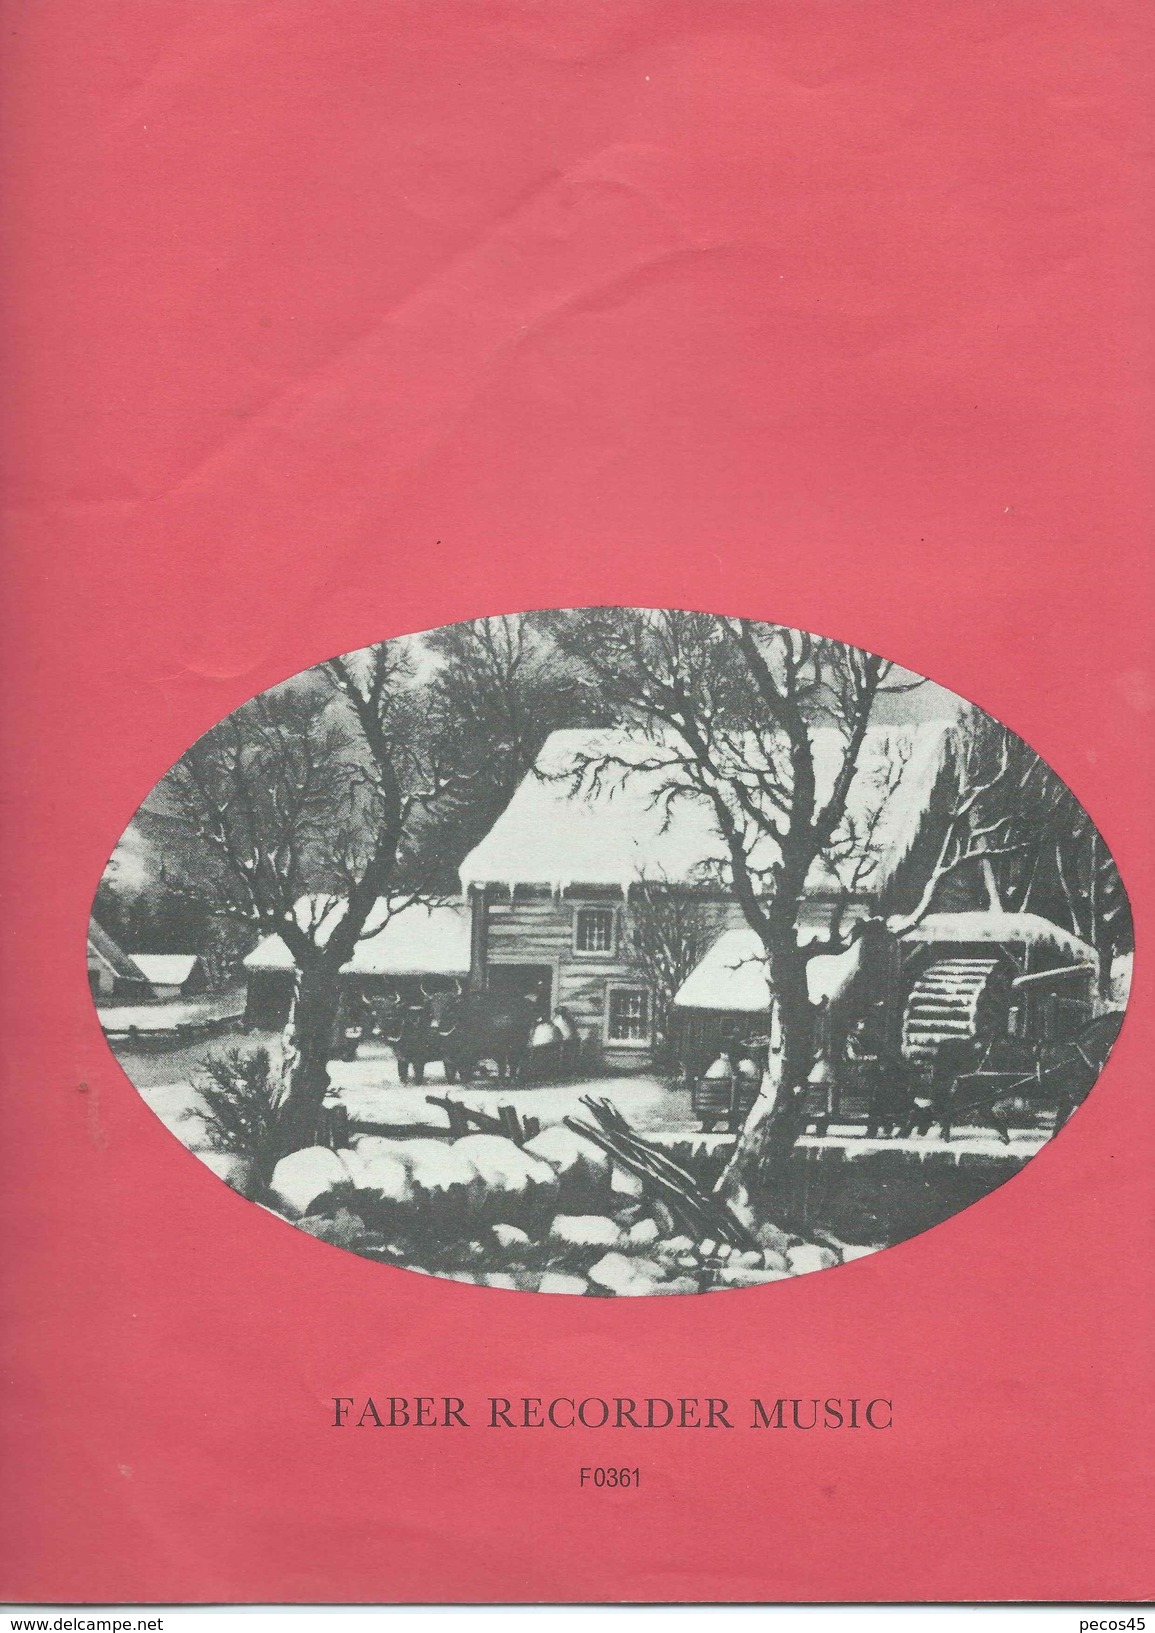 Partition : "JINGLE BELLS" 1968/69. - Música Folclórica